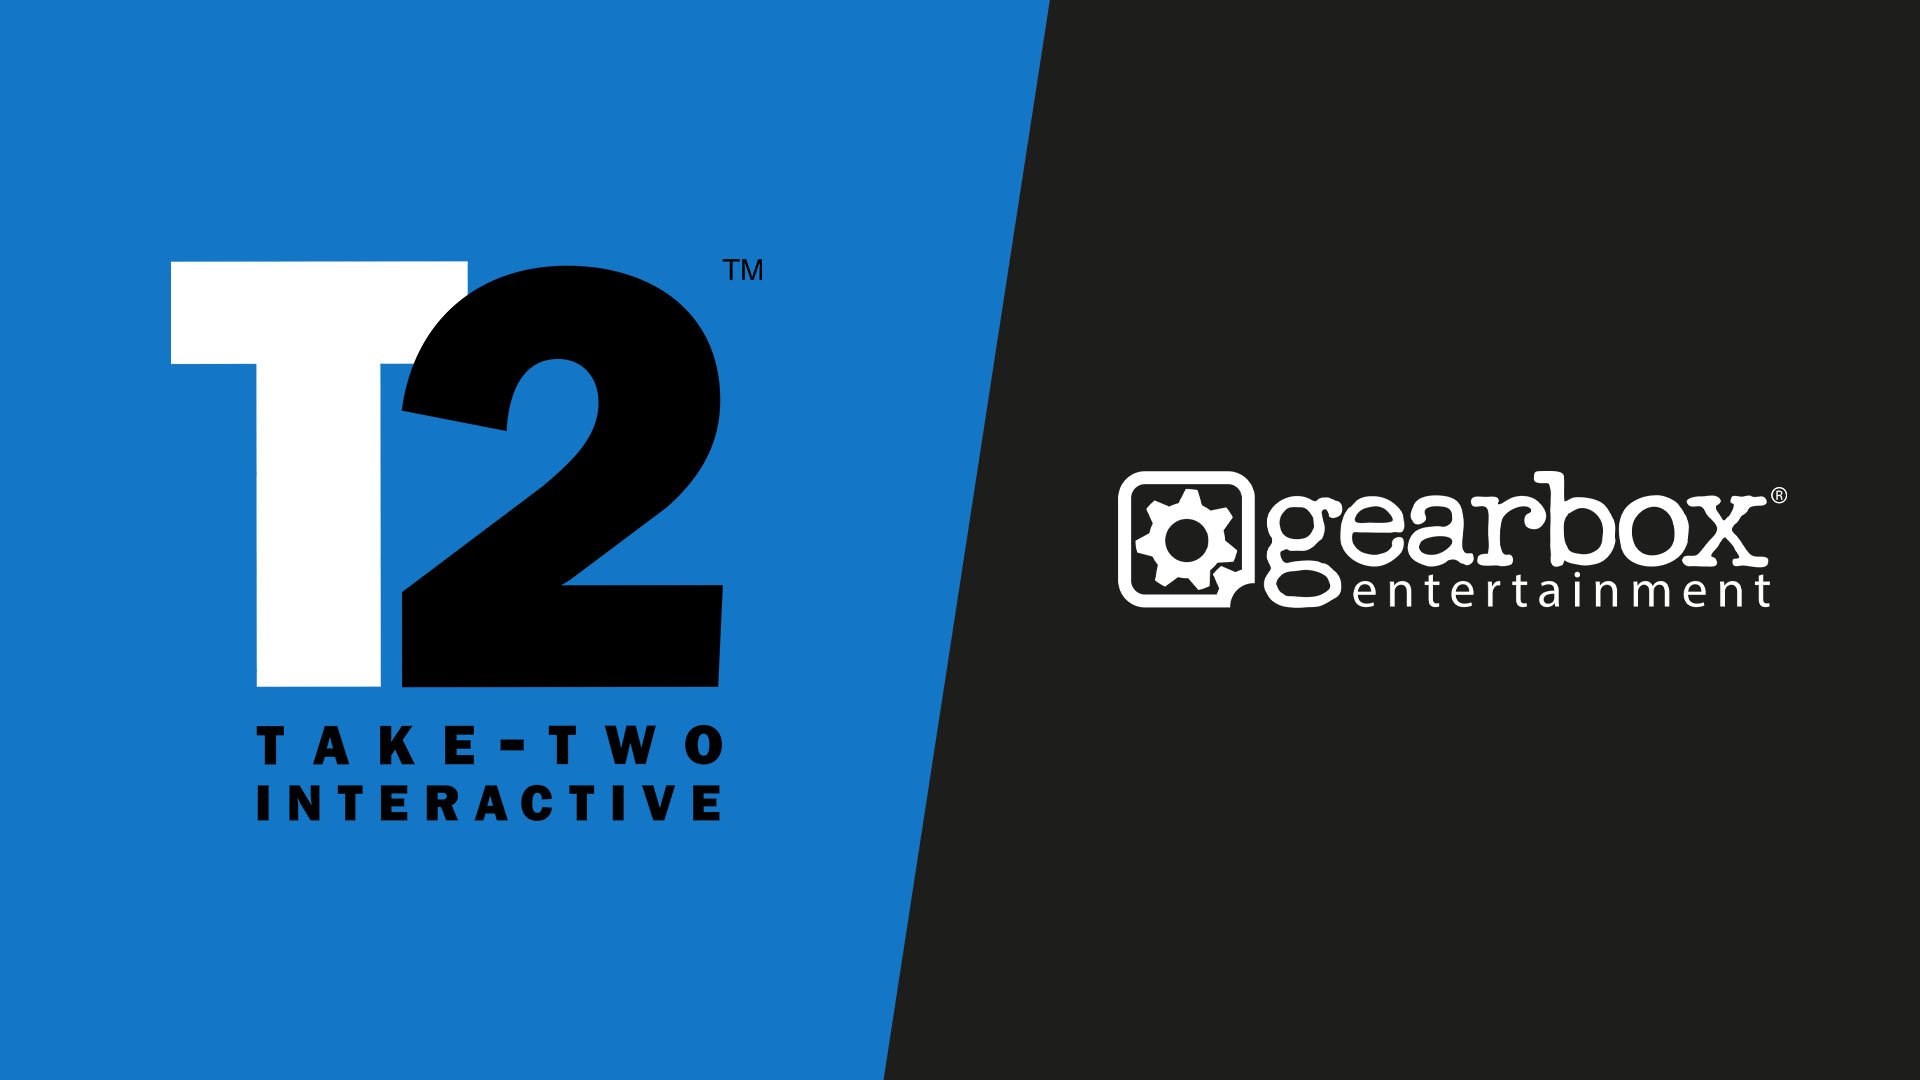 GTA’nın sahibi Take-Two, Gearbox Entertainment'ı satın aldı